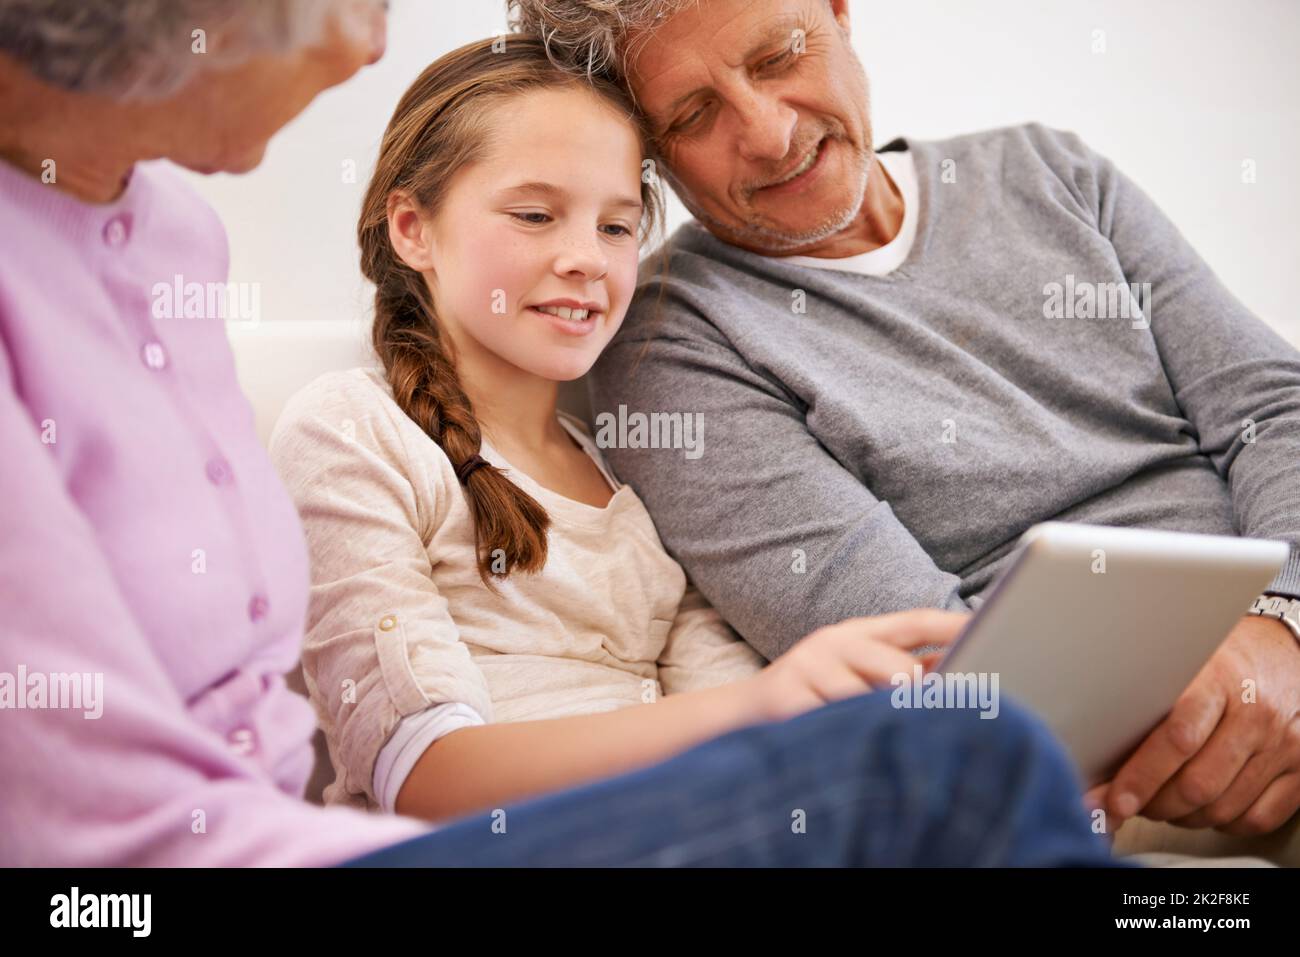 Und das ist die Welt der sozialen Medien. Aufnahme von Großeltern, die ihre Enkelin mit einem digitalen Tablet beobachten. Stockfoto